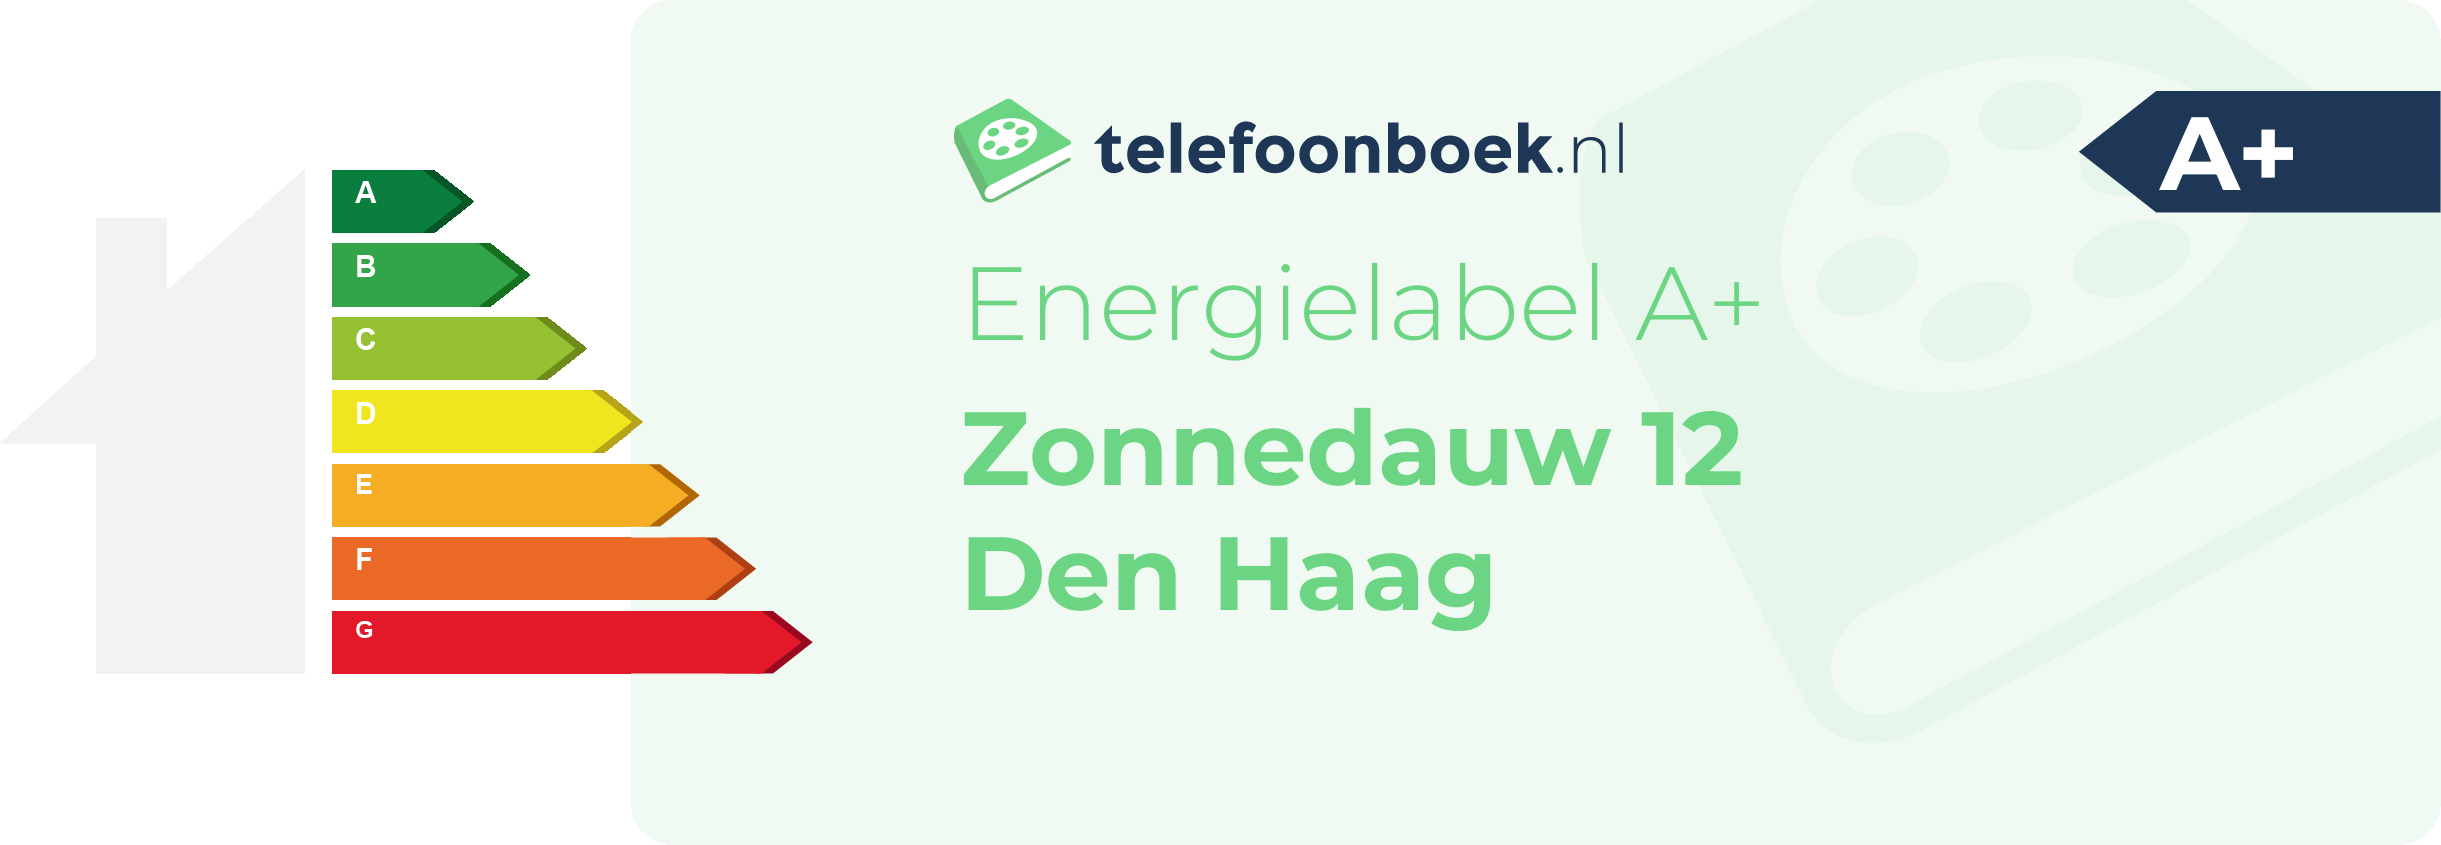 Energielabel Zonnedauw 12 Den Haag